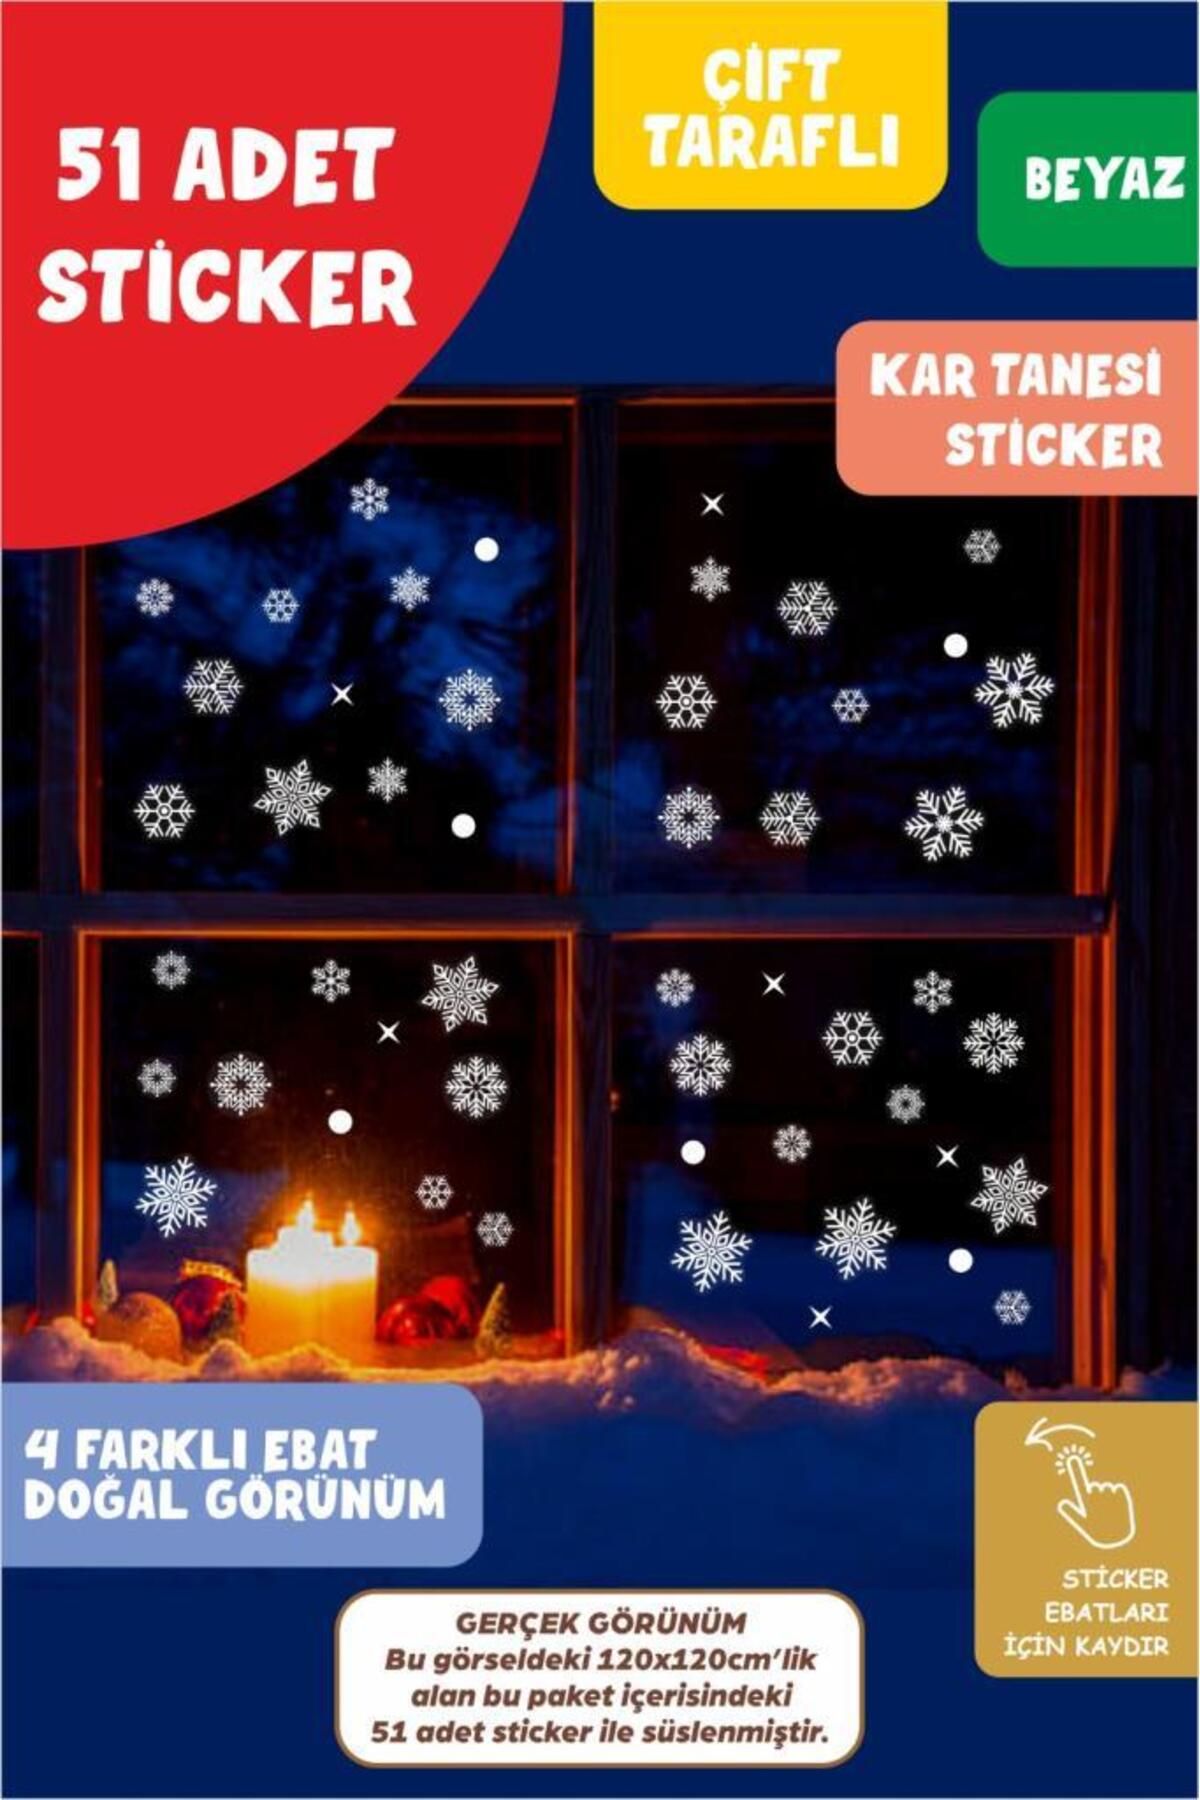 Pera İstanbul Yılbaşı Kar Tanesi Cam Sticker Çift Yönlü Görünüm Yeni Yıl Süsleme Tüm Yüzeylere Uygun